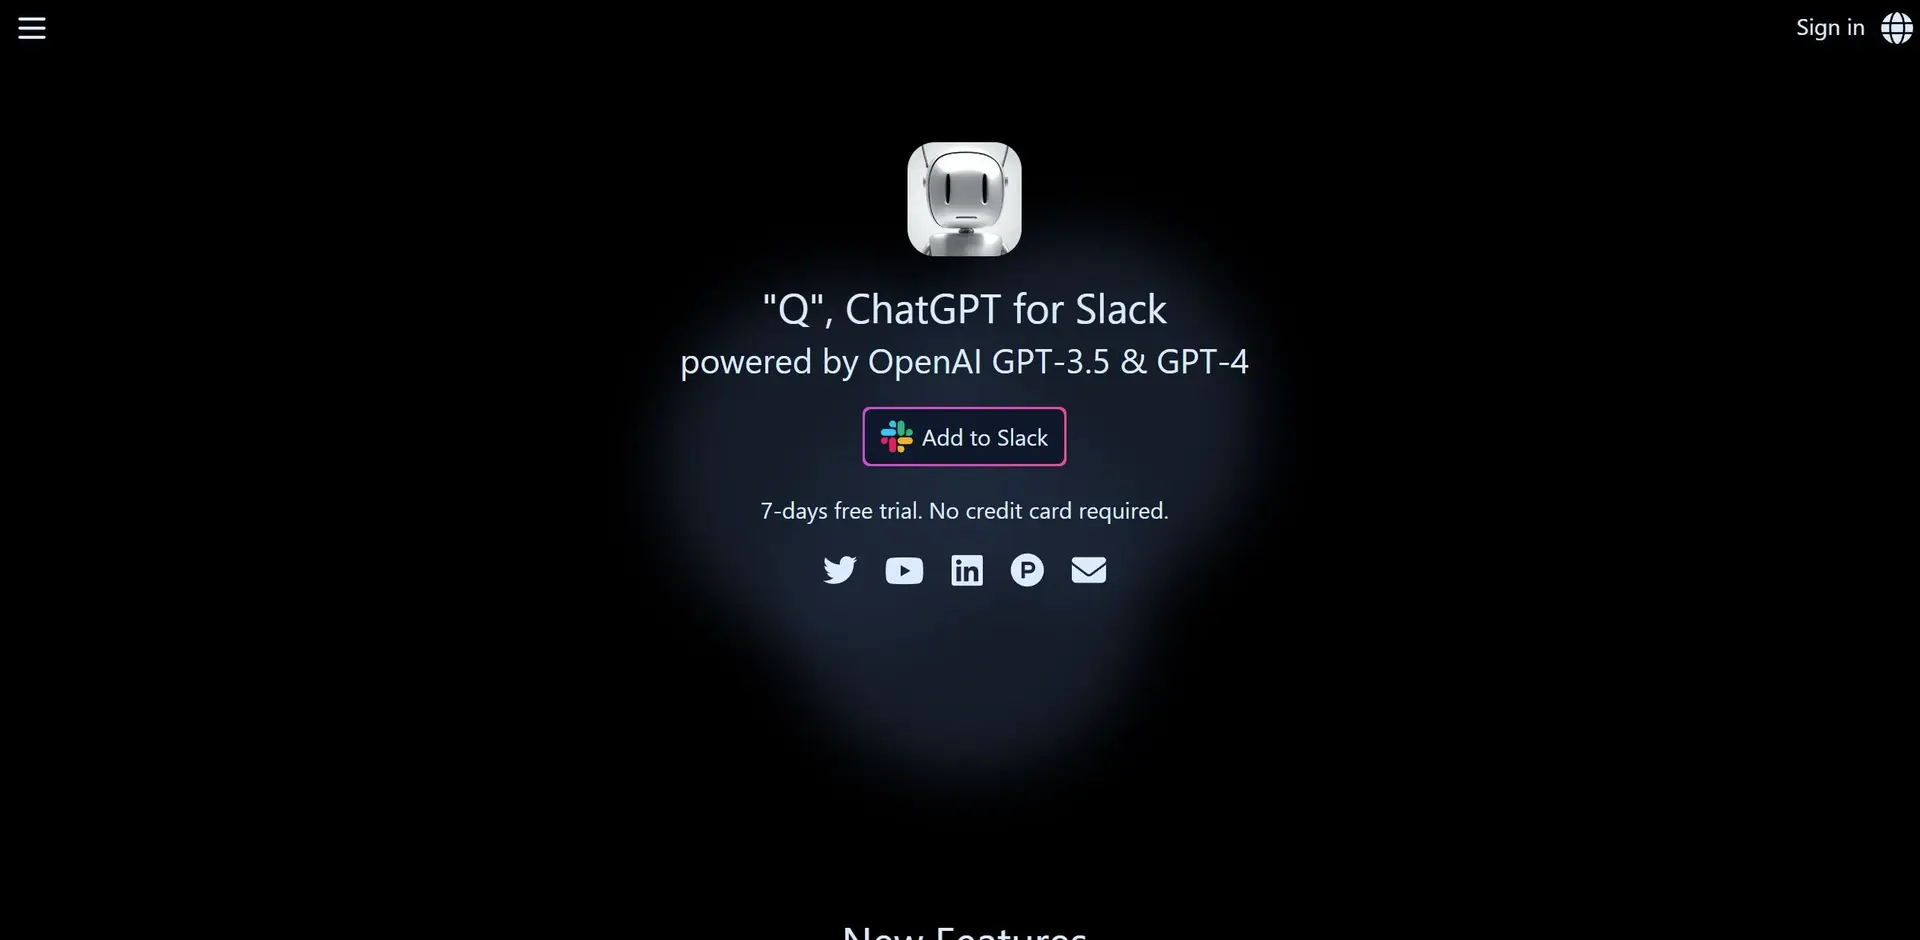 Q Slack Chatbotwebsite picture